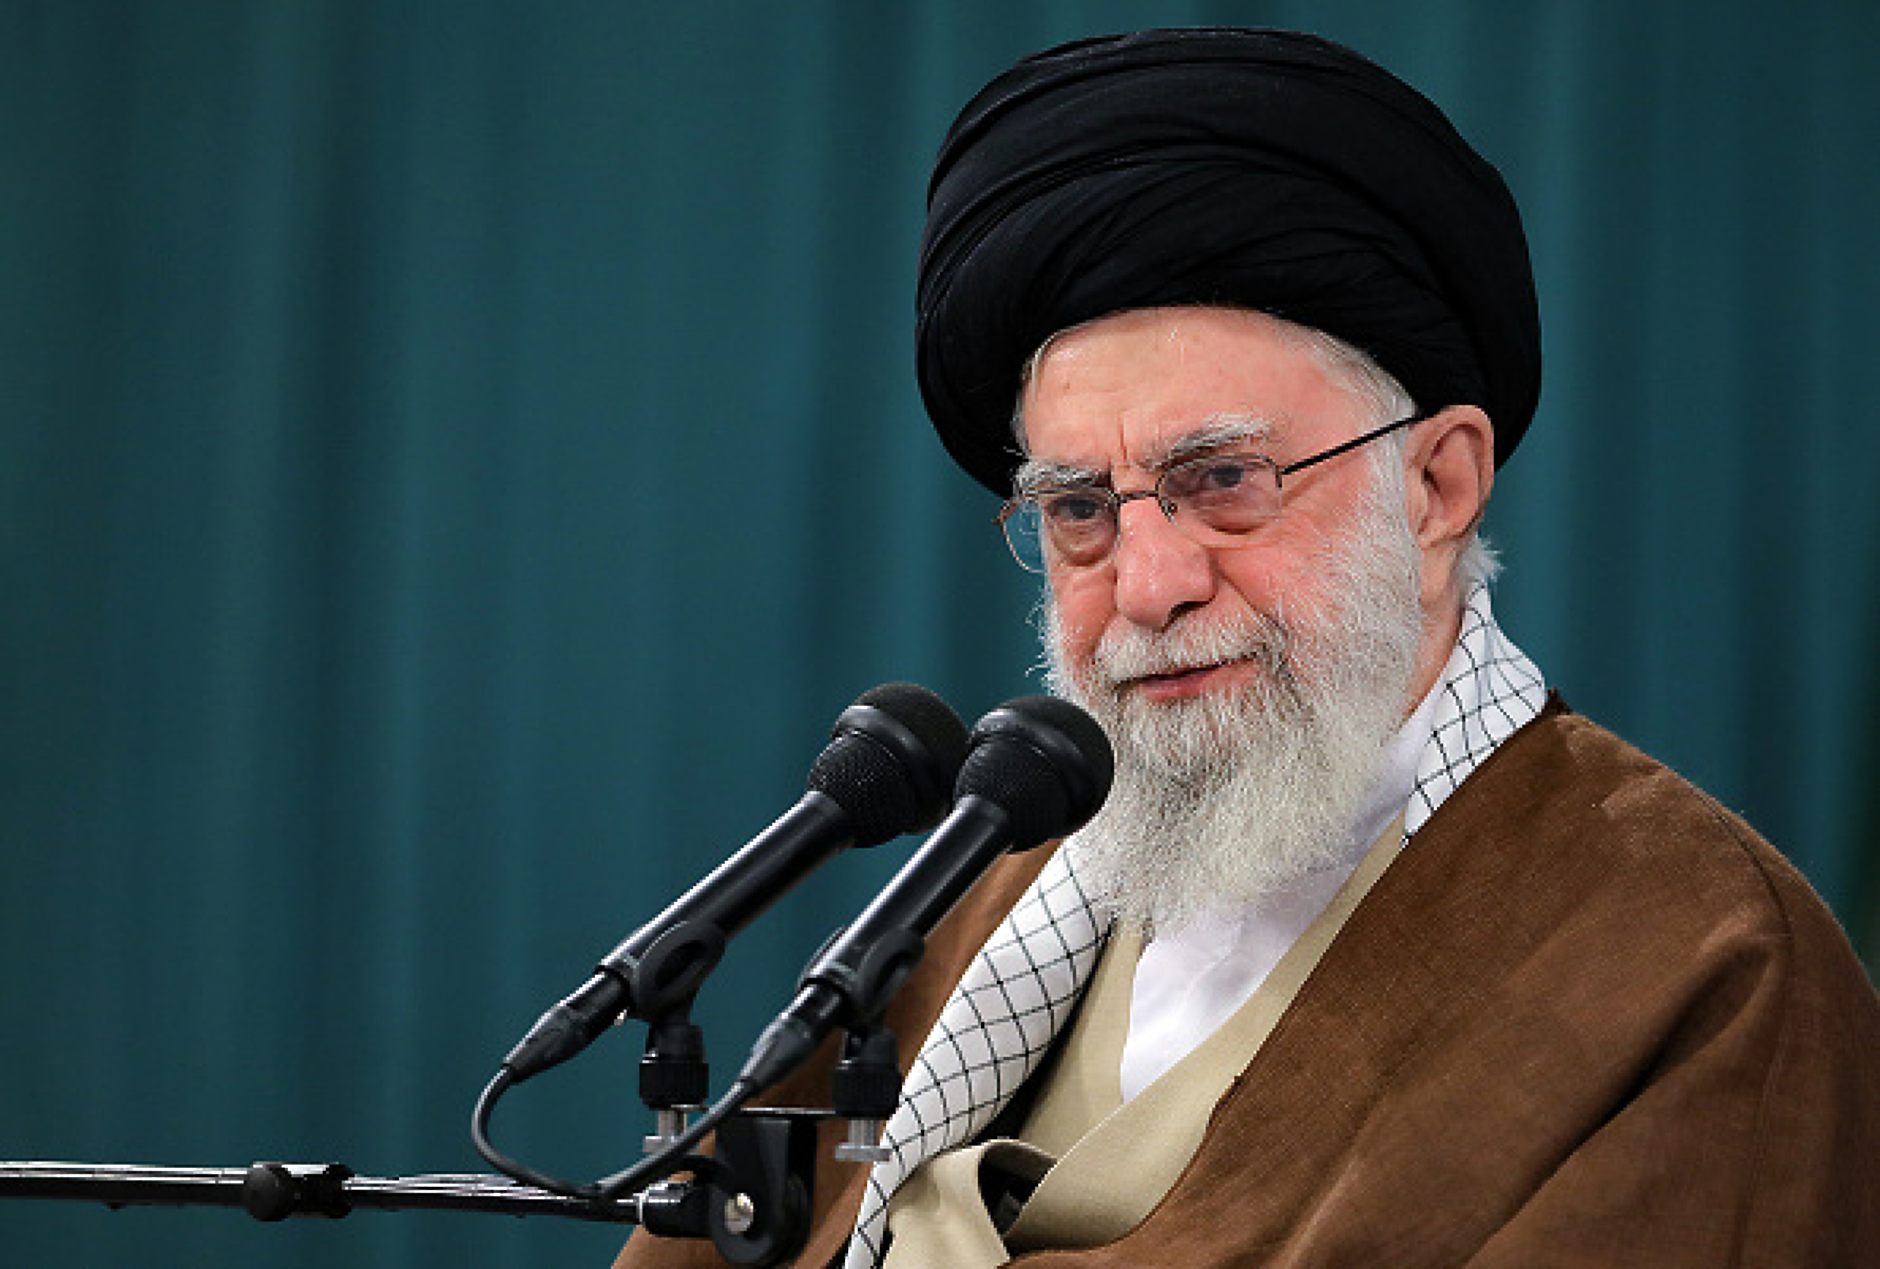 Meta блокира акаунтите на върховния лидер на Иран